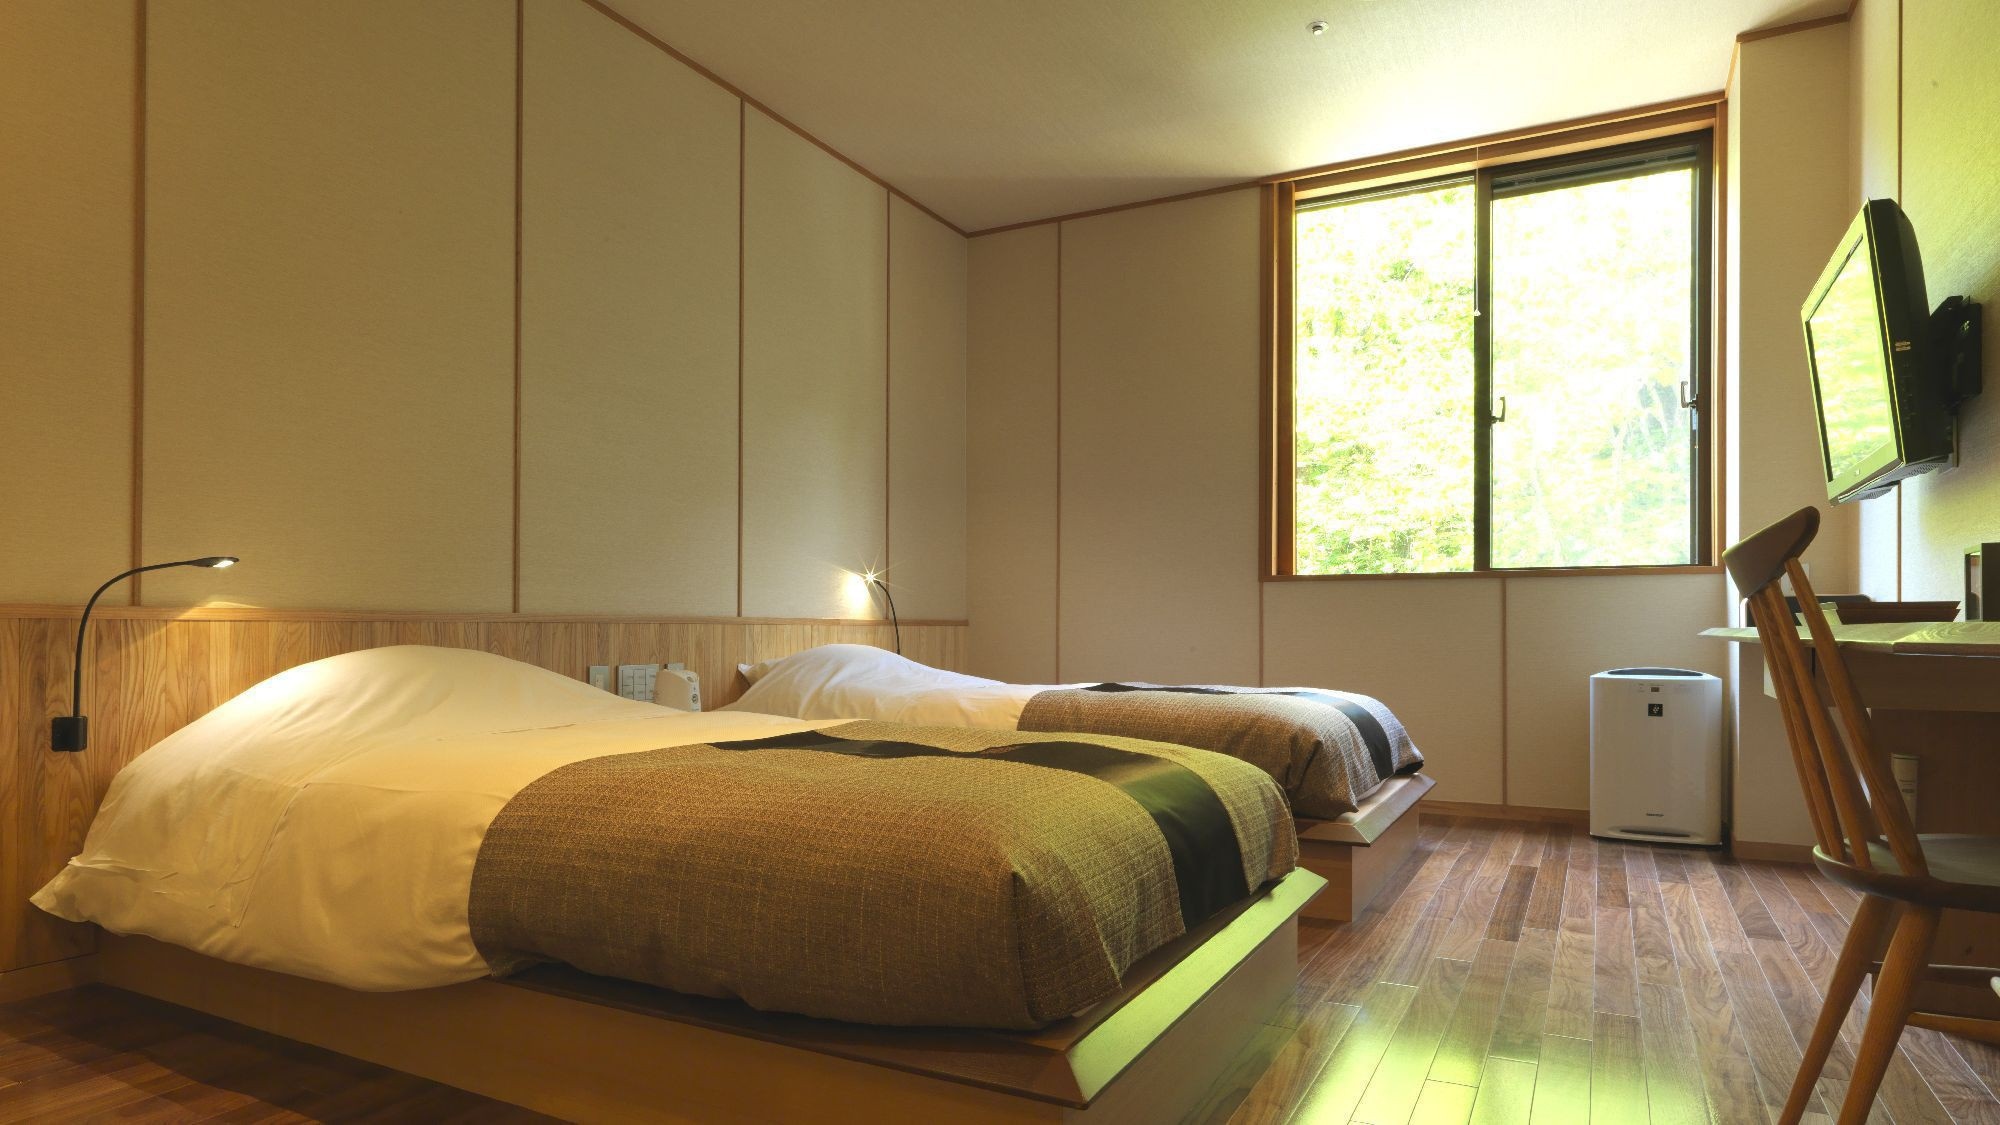 ◆ 日西式房間（客房示例）/ 52m2 日式和西式雙床間+榻榻米空間